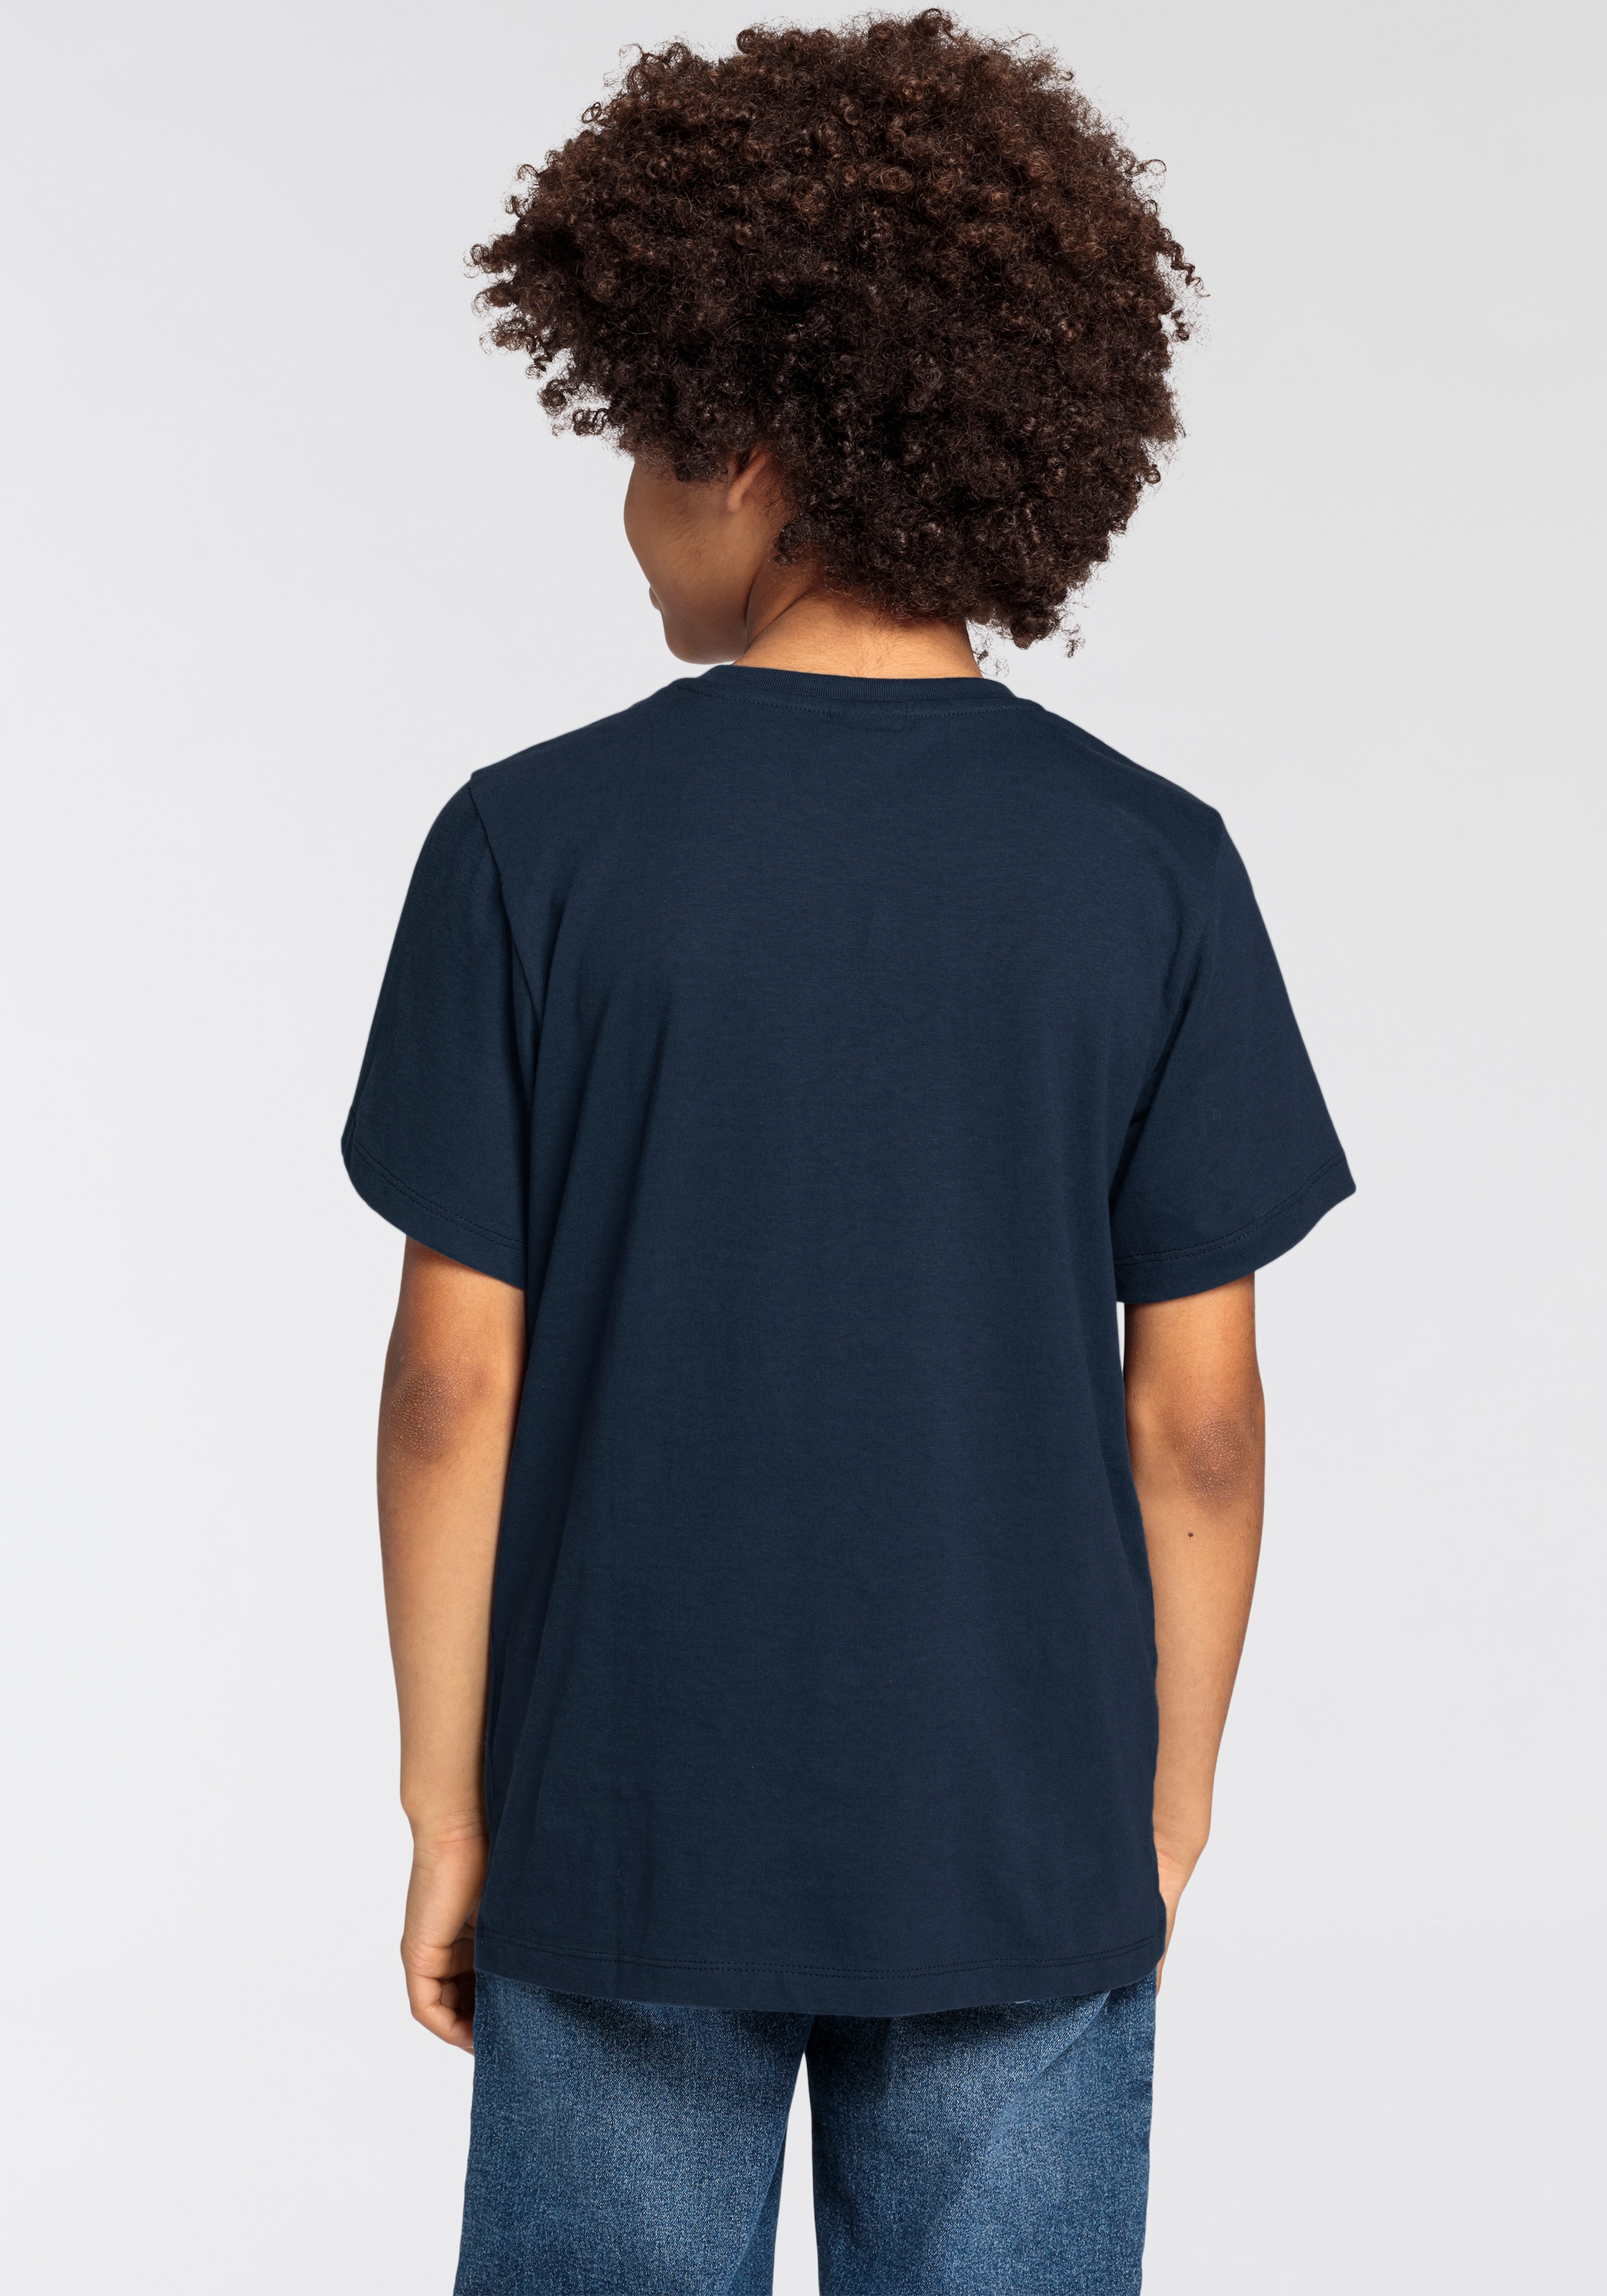 KIDSWORLD T-Shirt »CHECK DAS DIGGA«, Sprücheshirt für Jungen